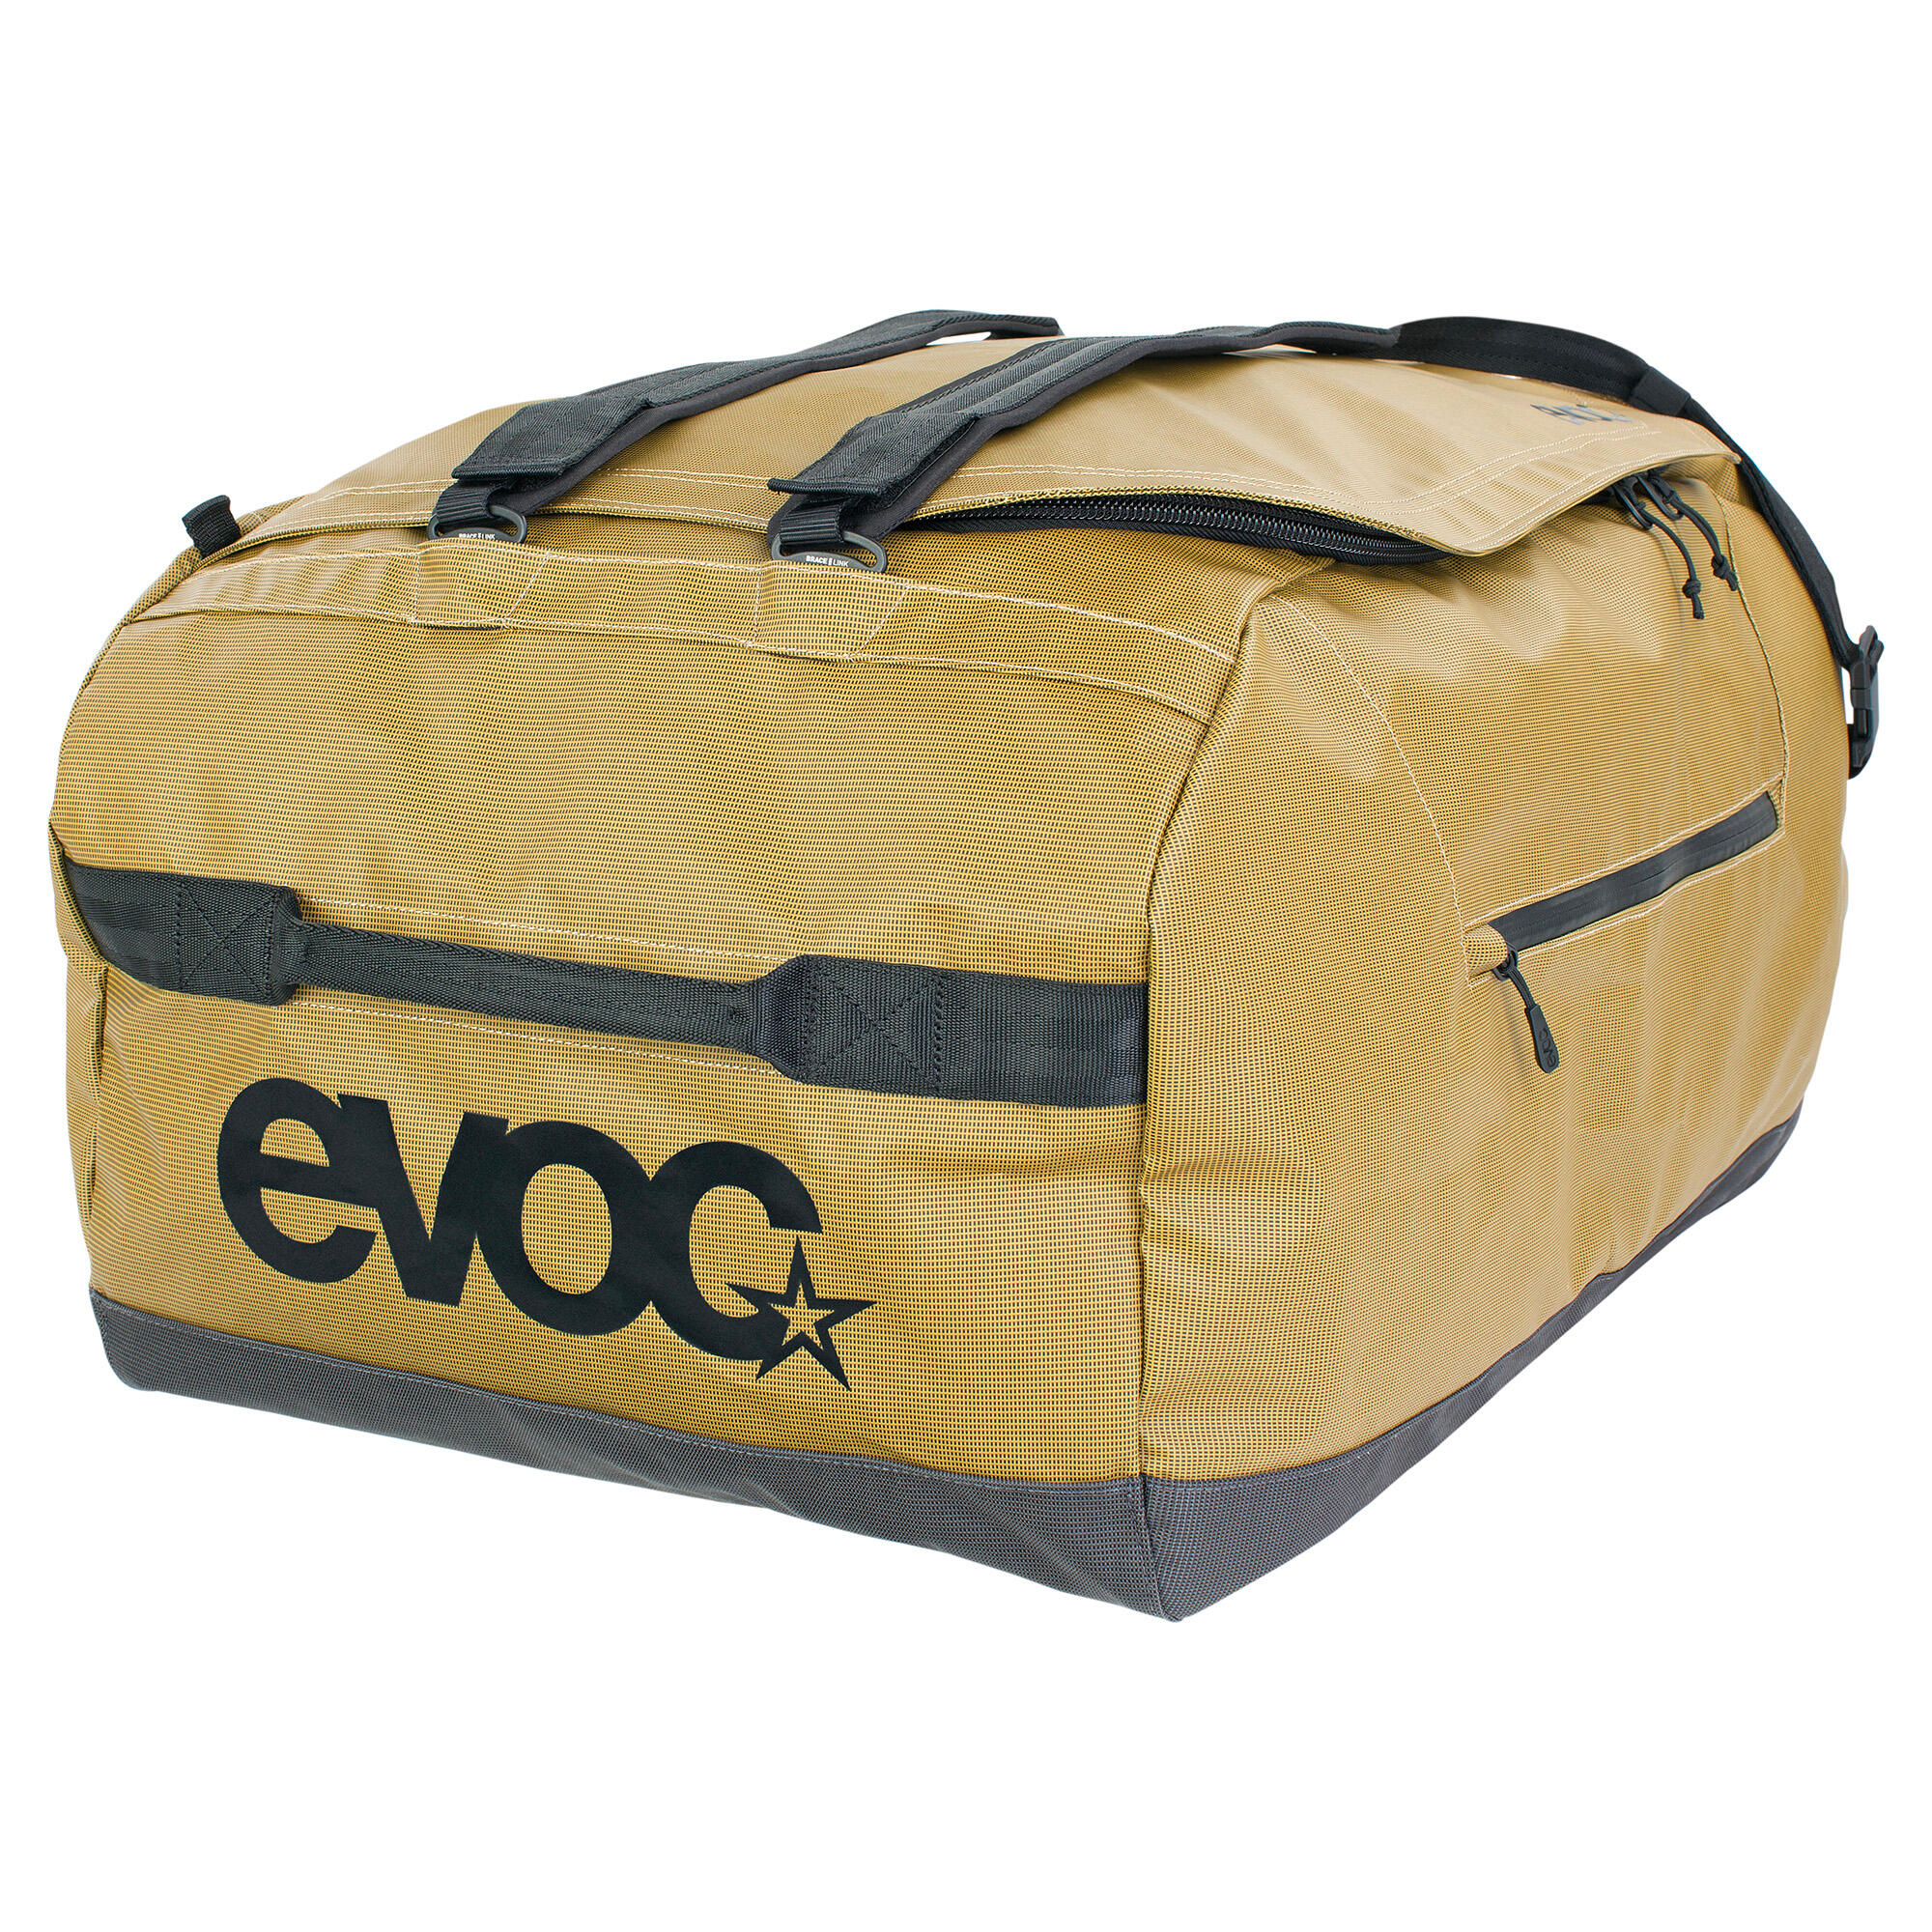 EVOC Duffle Bag 4/7